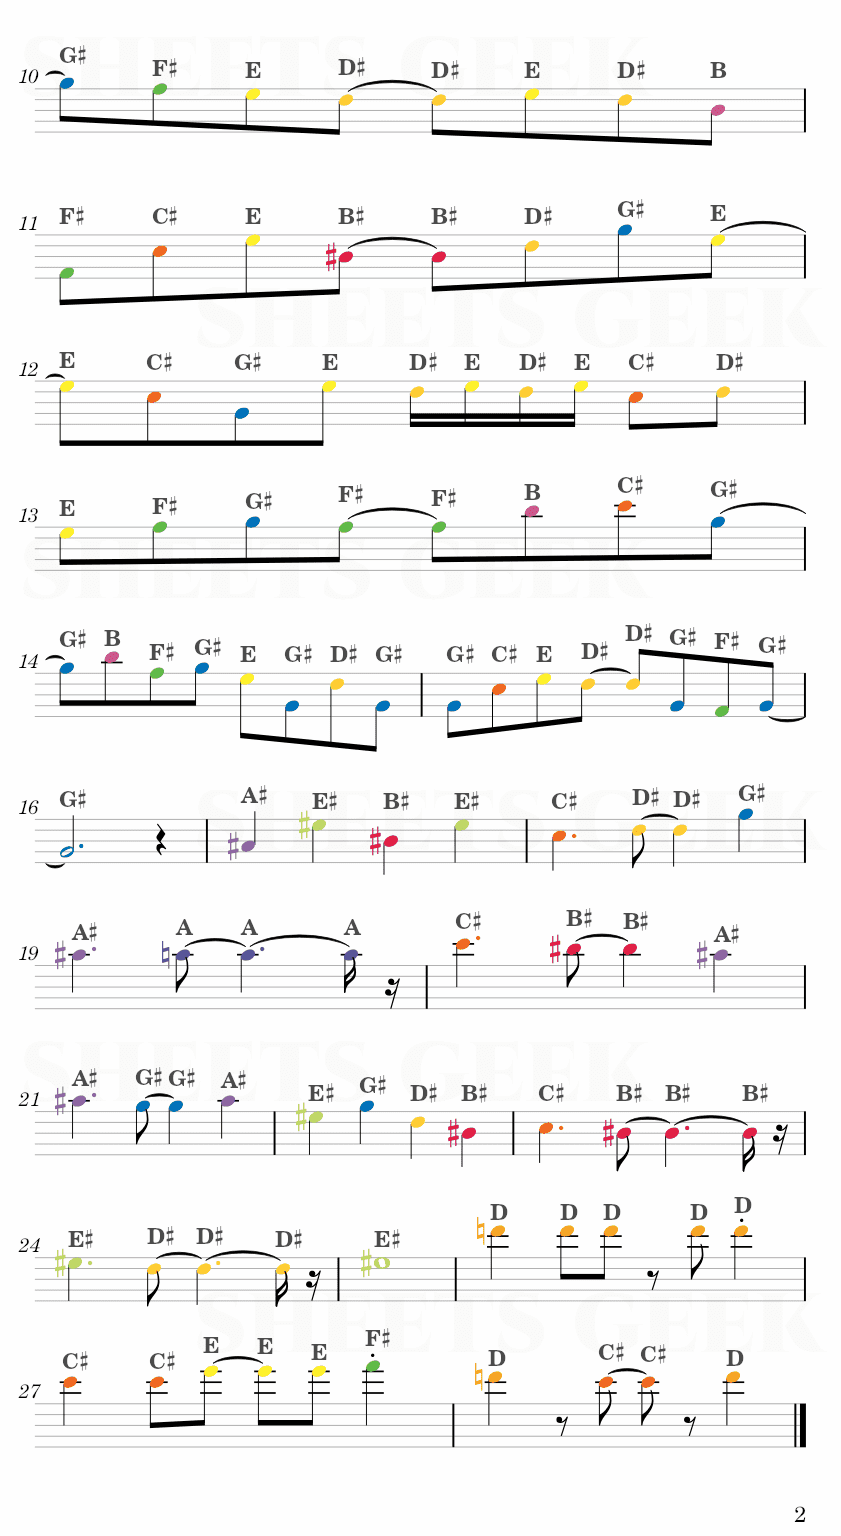 Necrofantasia (Yukari's Theme) - Touhou Easy Sheet Music Free for piano, keyboard, flute, violin, sax, cello page 2